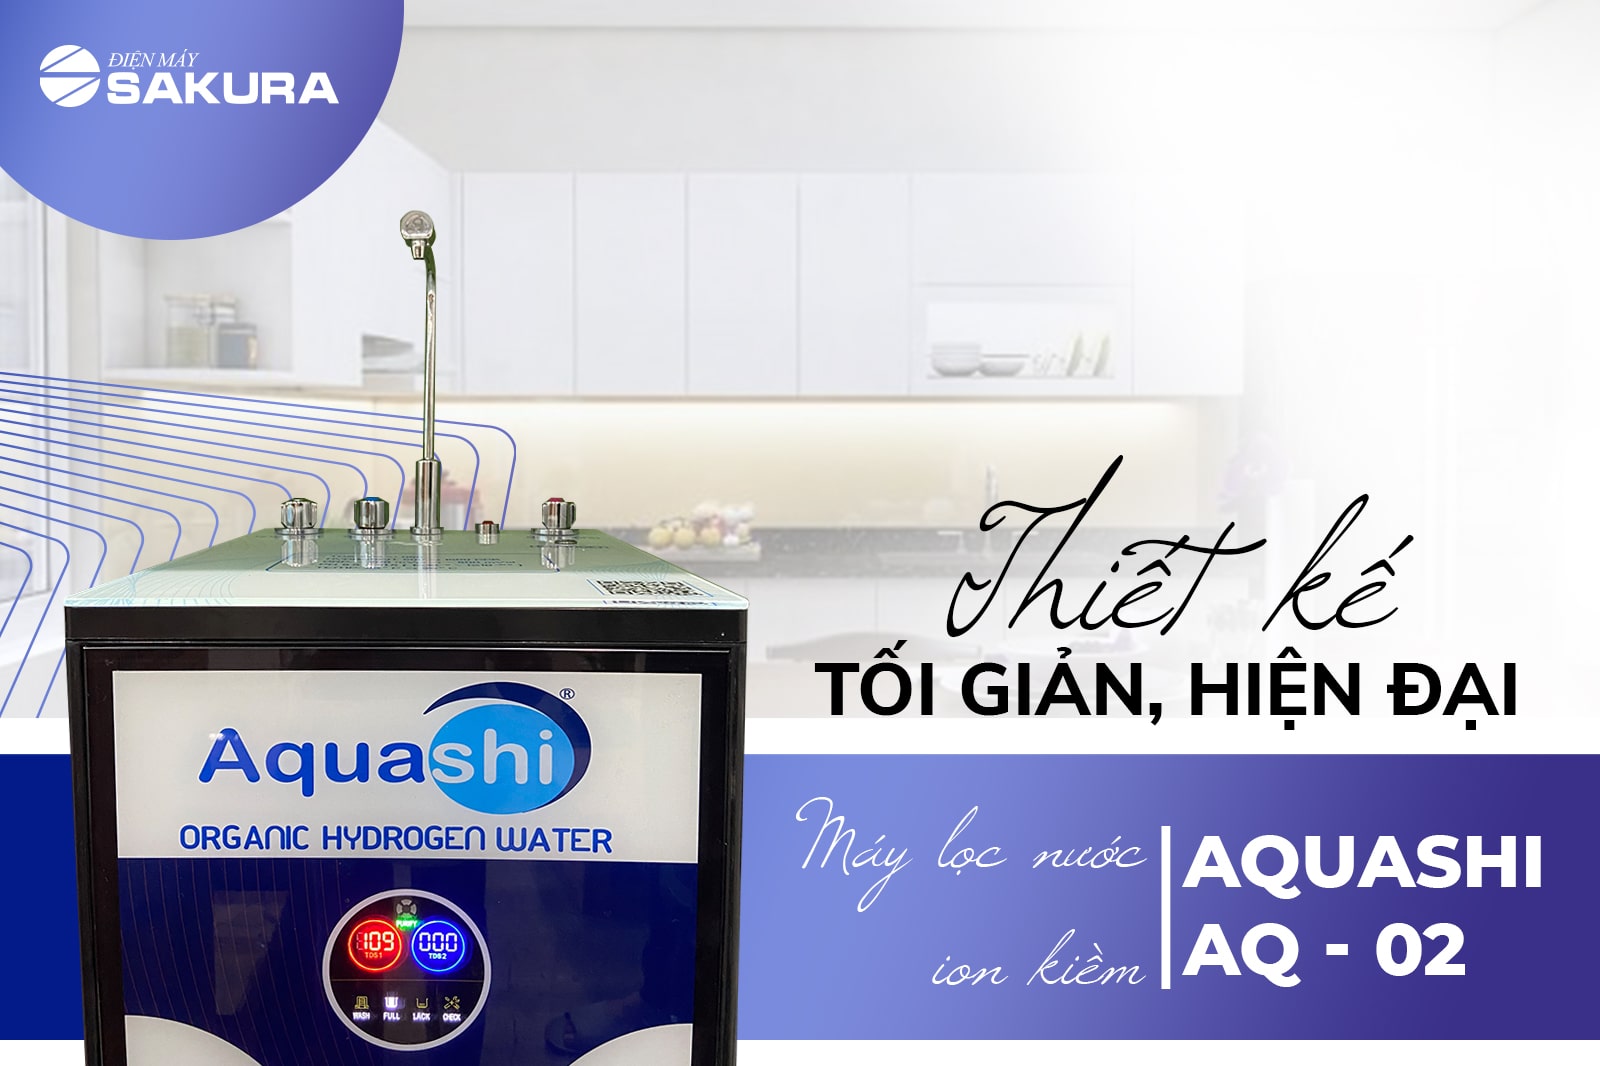 Thiết kế tối giản, hiện đại của máy lọc nước ion kiềm Aquashi AQ-02